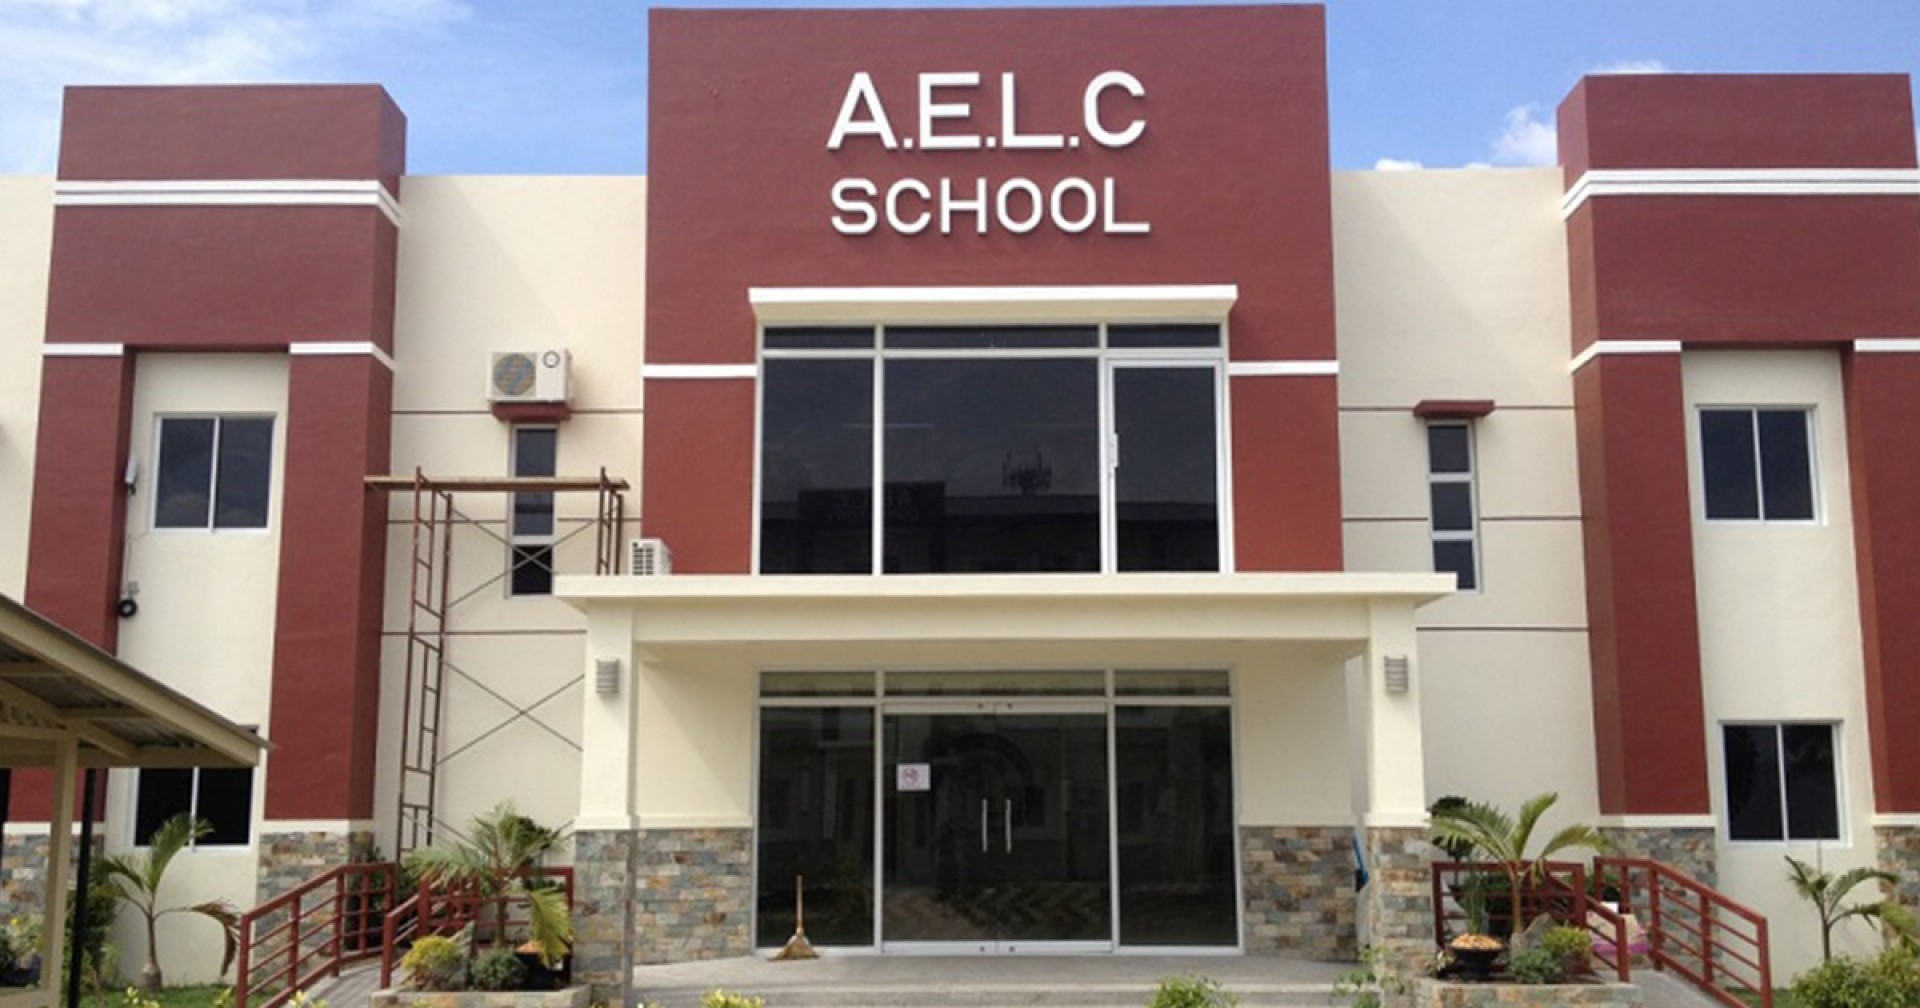 Du học Philippines với AELC – 1, trường có nhiều giáo viên bản ngữ nhất thành phố Clark